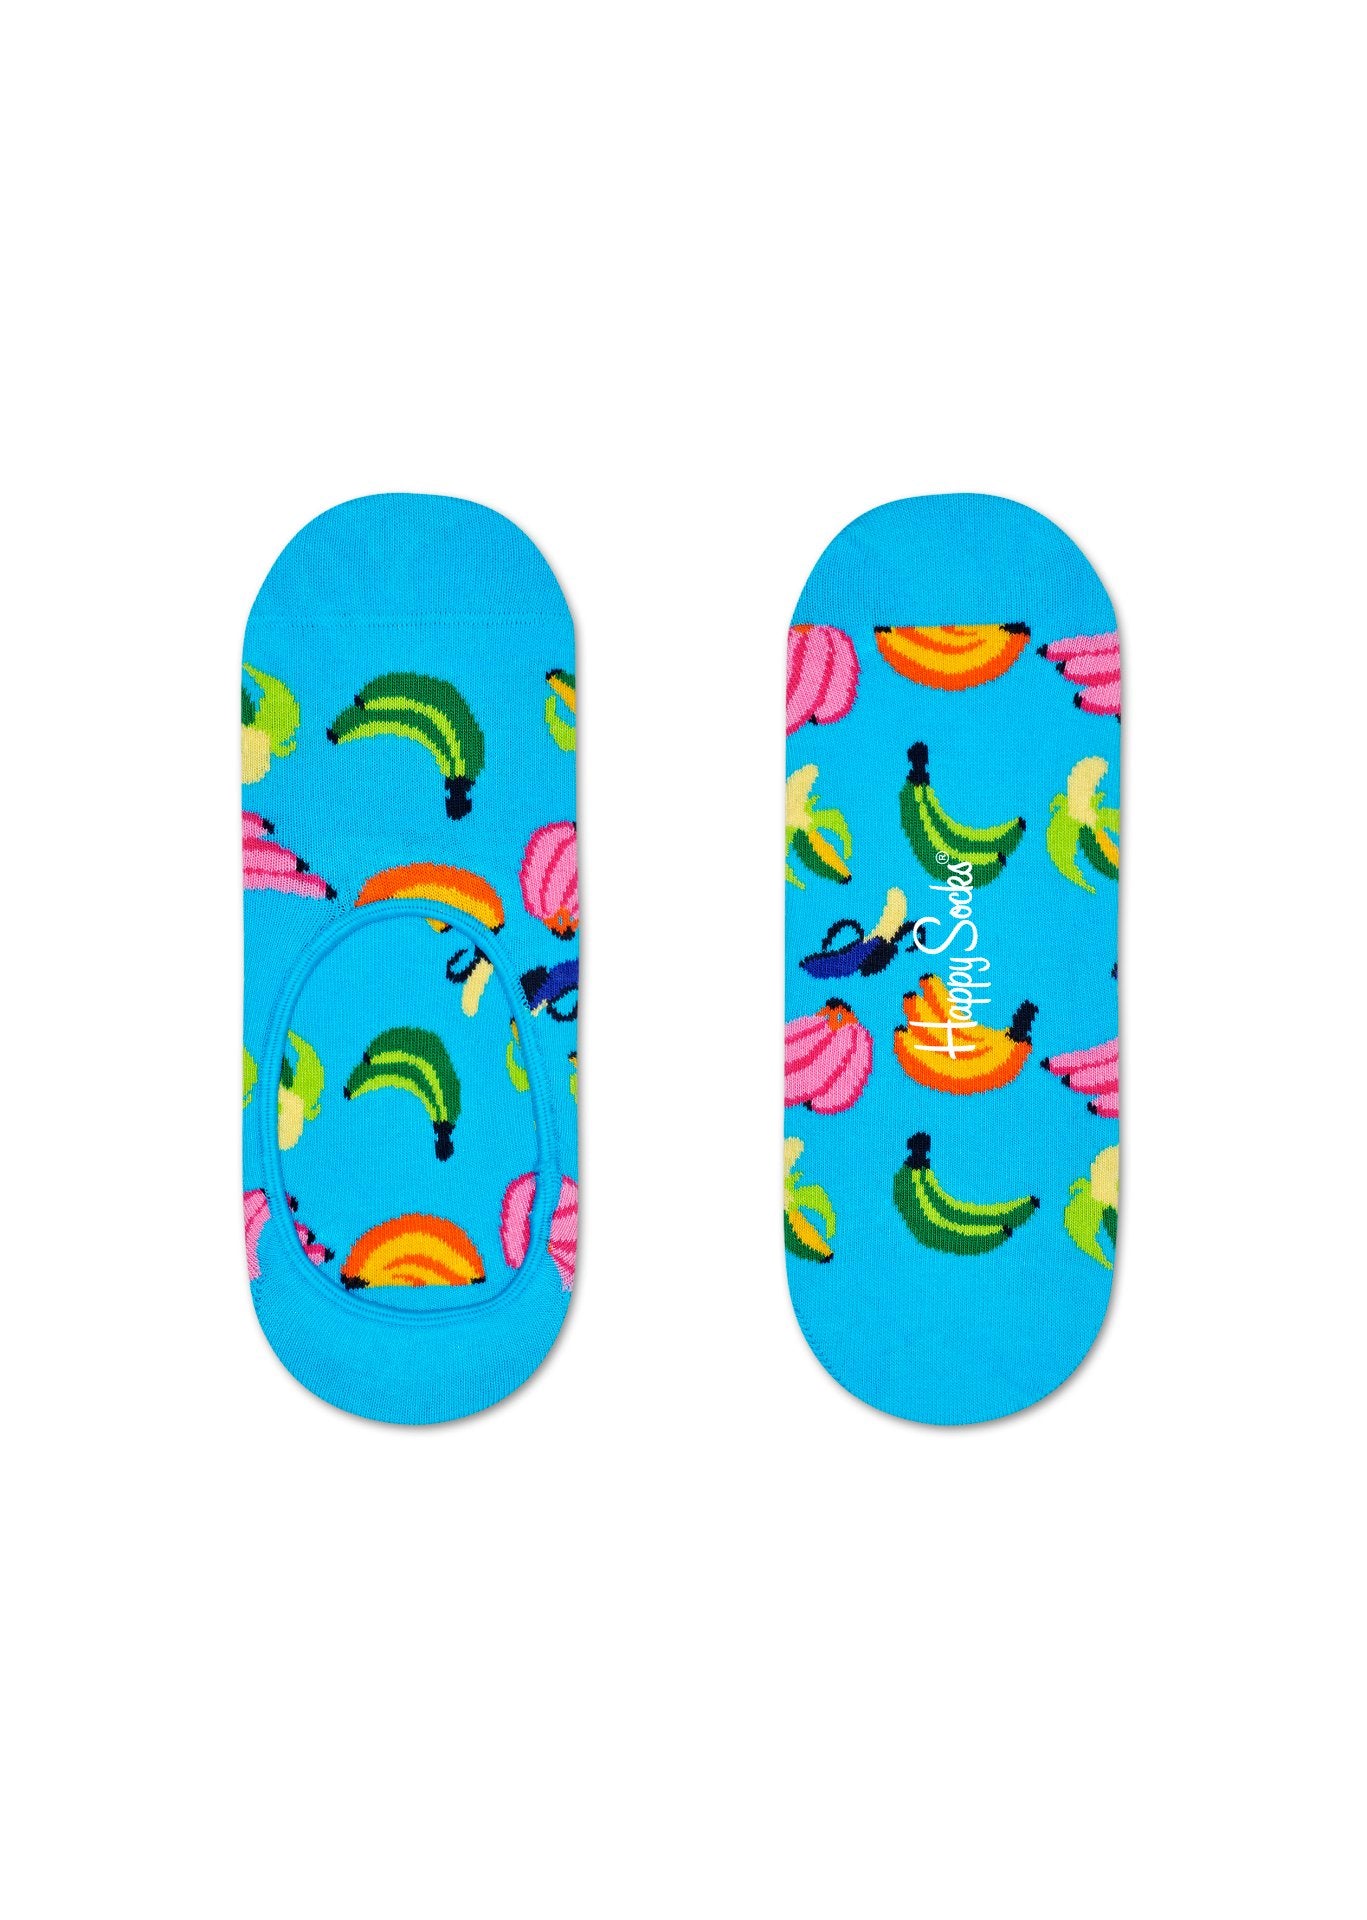 Nízké modré ponožky Happy Socks s banány, vzor Banana